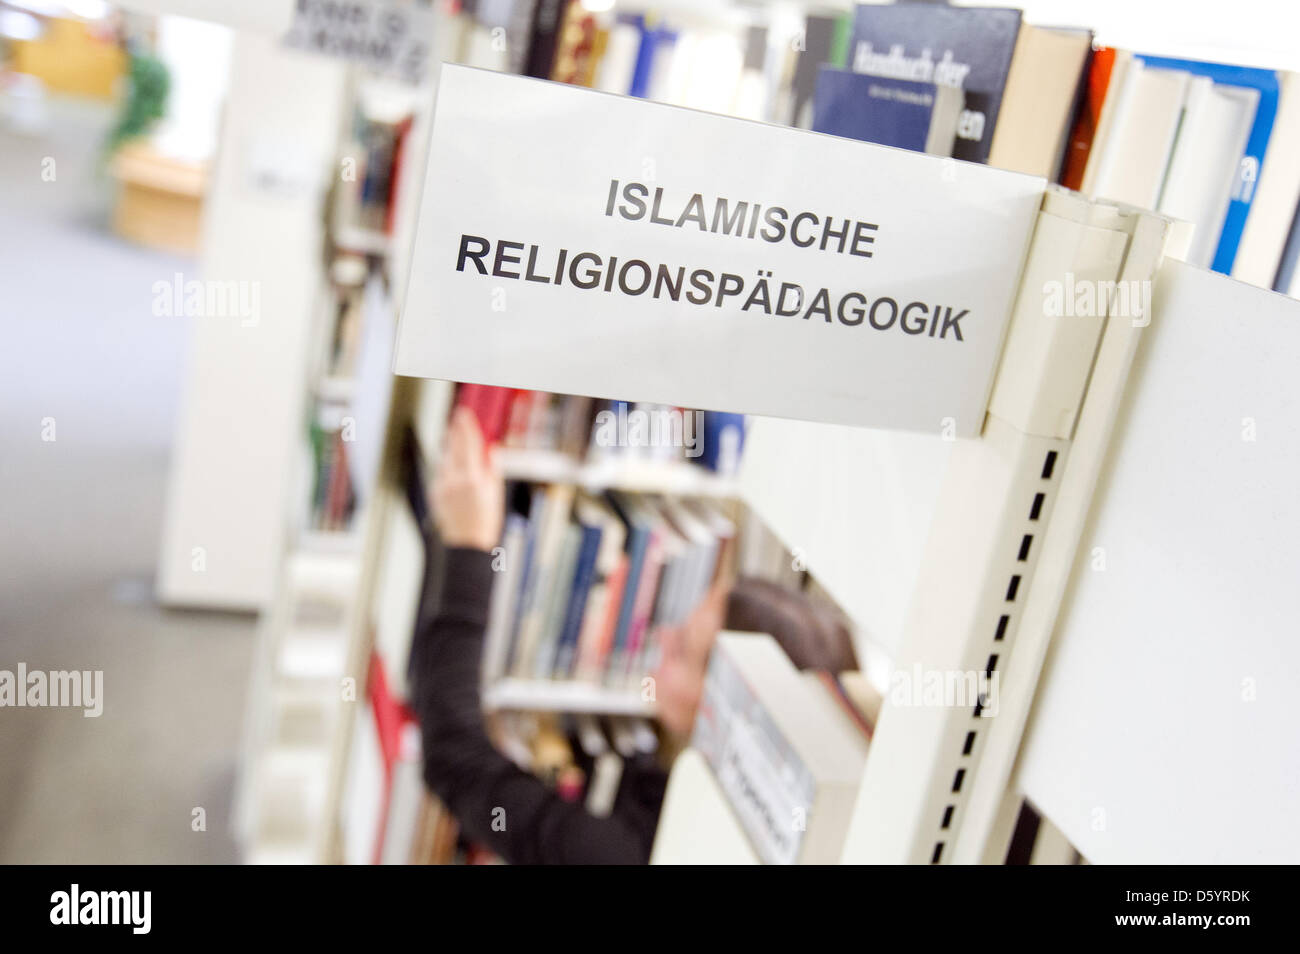 Das Buchabschnitt der islamischen Religion Pädagogik ist auf einem Regal an der Universitätsbibliothek in Osnabrück, 29. Oktober 2012 abgebildet. Das Institut für Theologie des Islam begann dieses Wintersemesters statt. Foto: Friso Gentsch Stockfoto